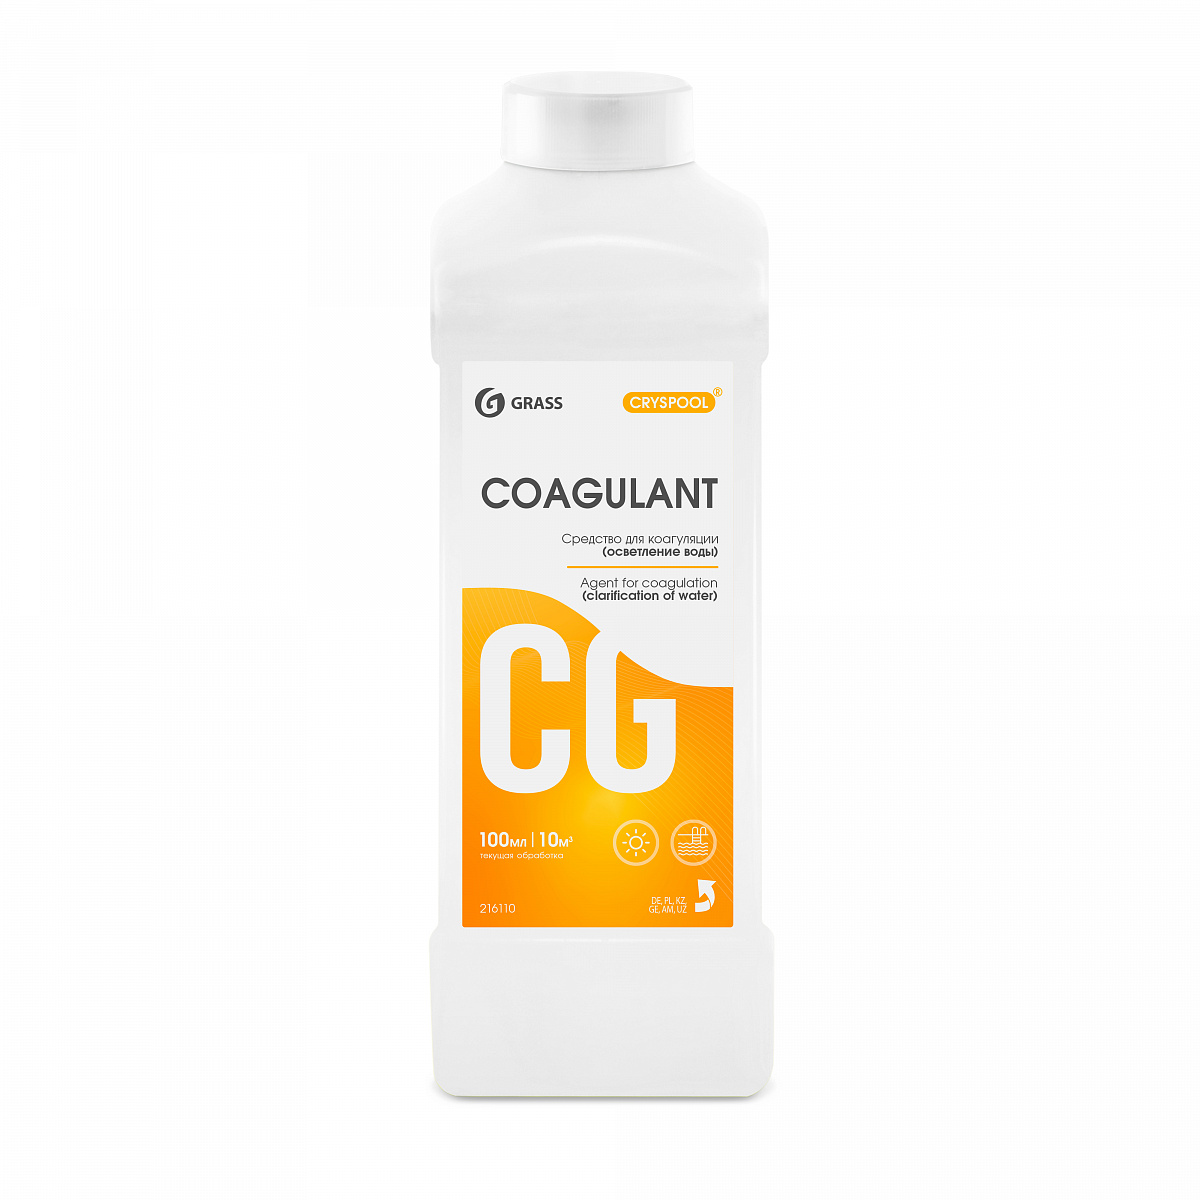 Средство для коагуляции воды Grass CRYSPOOL Coagulant (1 л) (150004) 